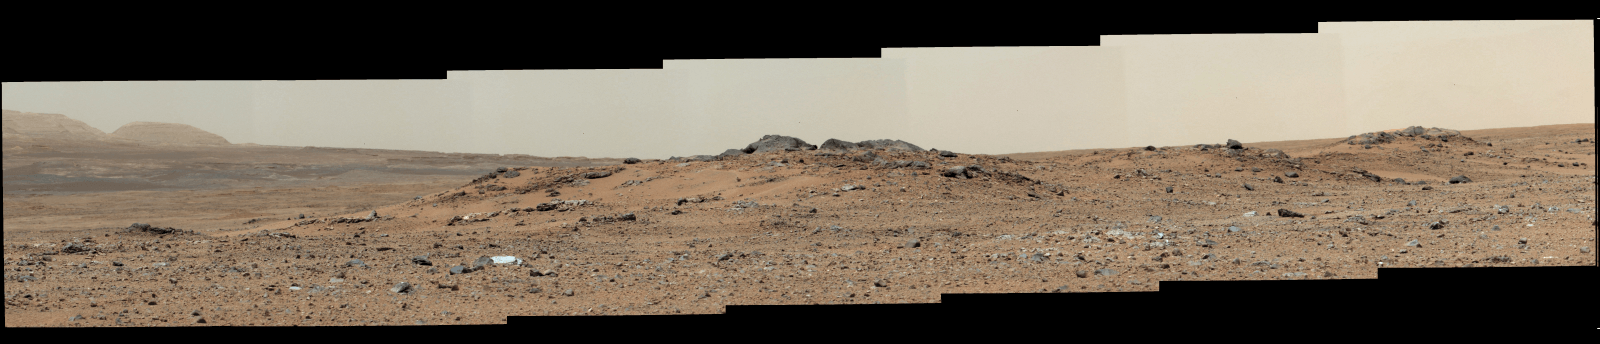 תמונה זו מורכבת משבעה תצלומים של עדשת התקריב (telephoto-lens) הנמצאת בצידה הימנית של זרוע המצלמות (Mastcam) המותקנת על רכב המאדים קירויוסיטי ביום המאדימאי (סול) ה-343 לפעילות הרכב על מאדים. צילום:  NASA/JPL-Caltech/Malin Space Science Systems